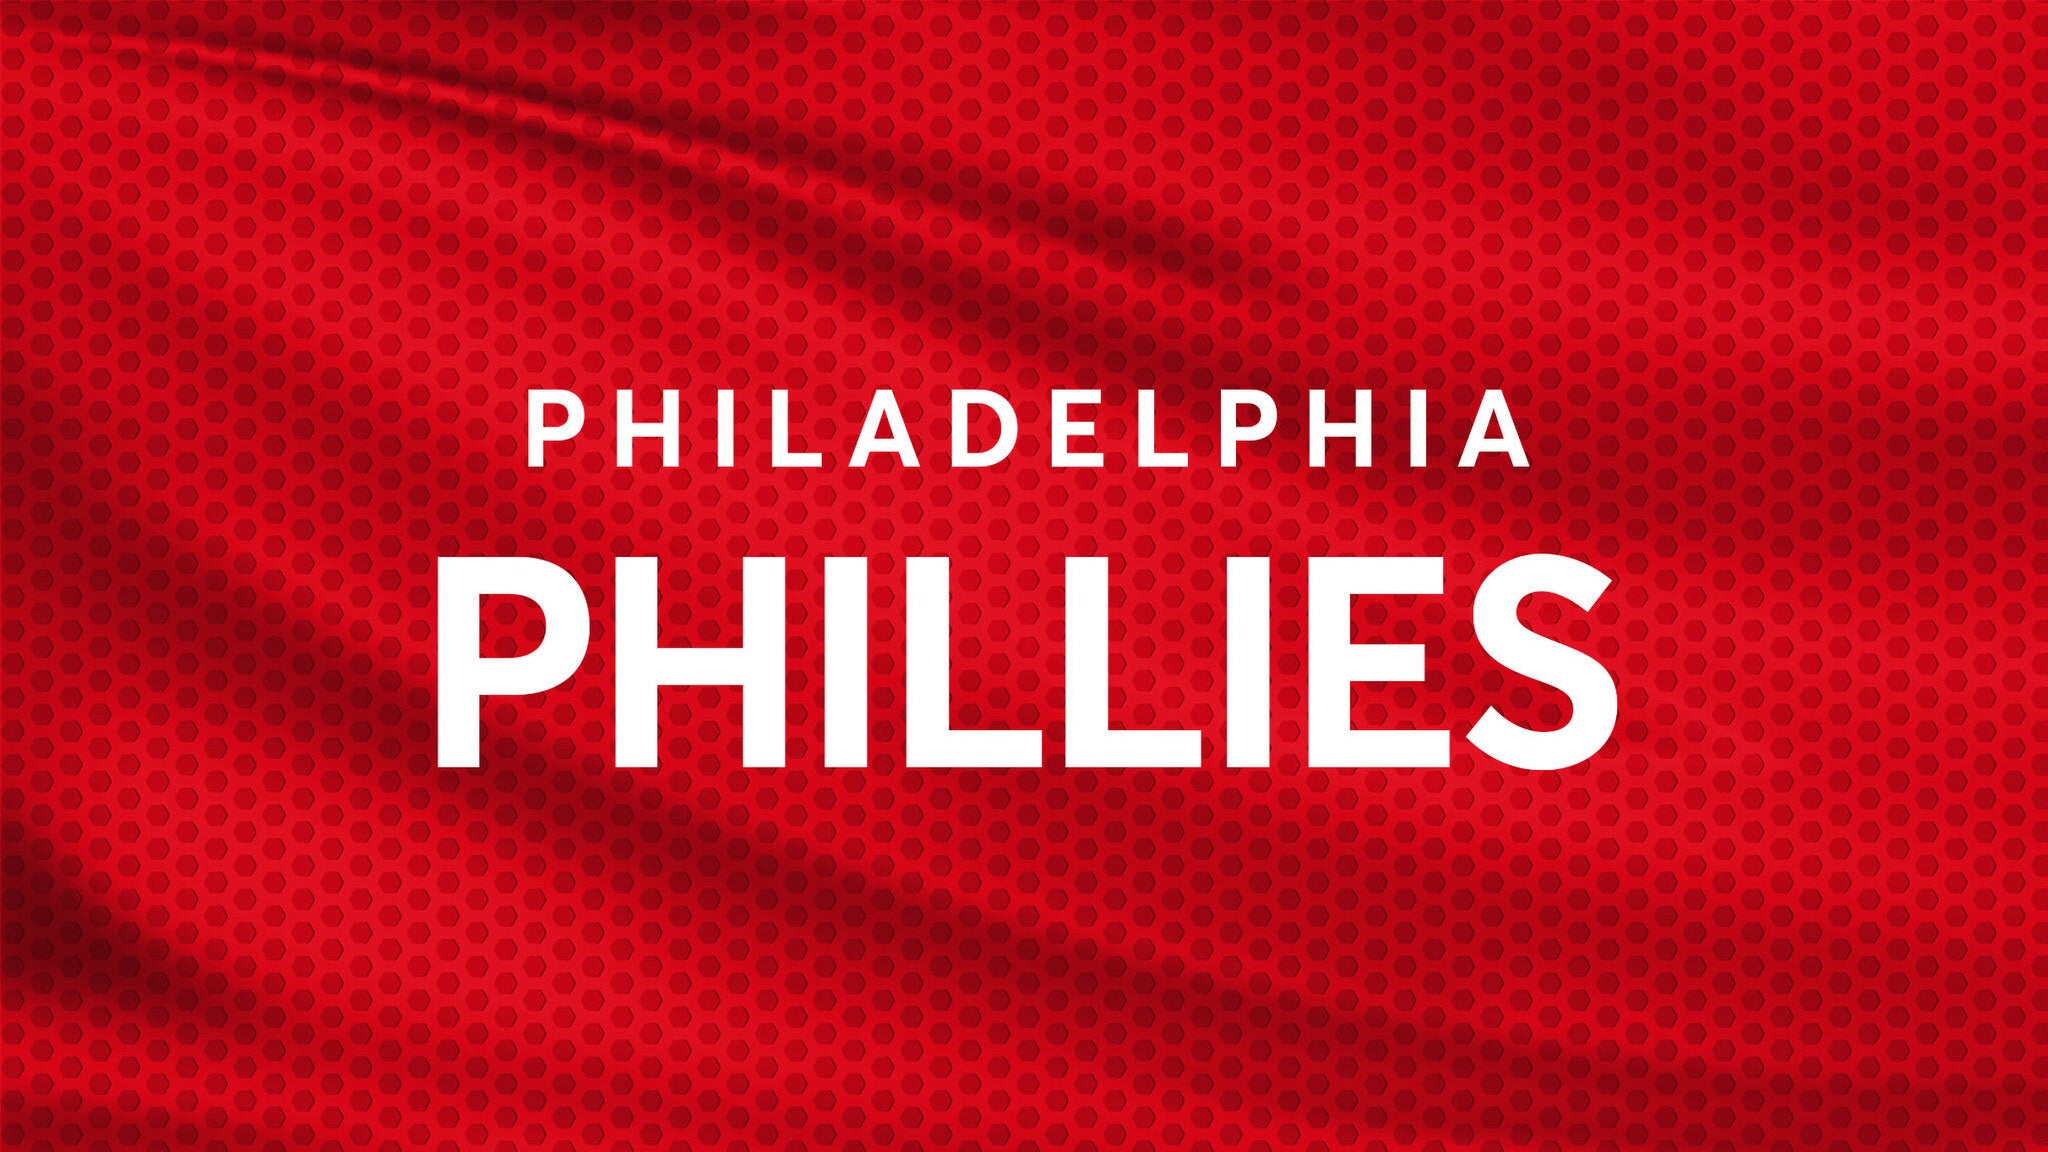 Philadelphia Phillies vs. Miami Marlins